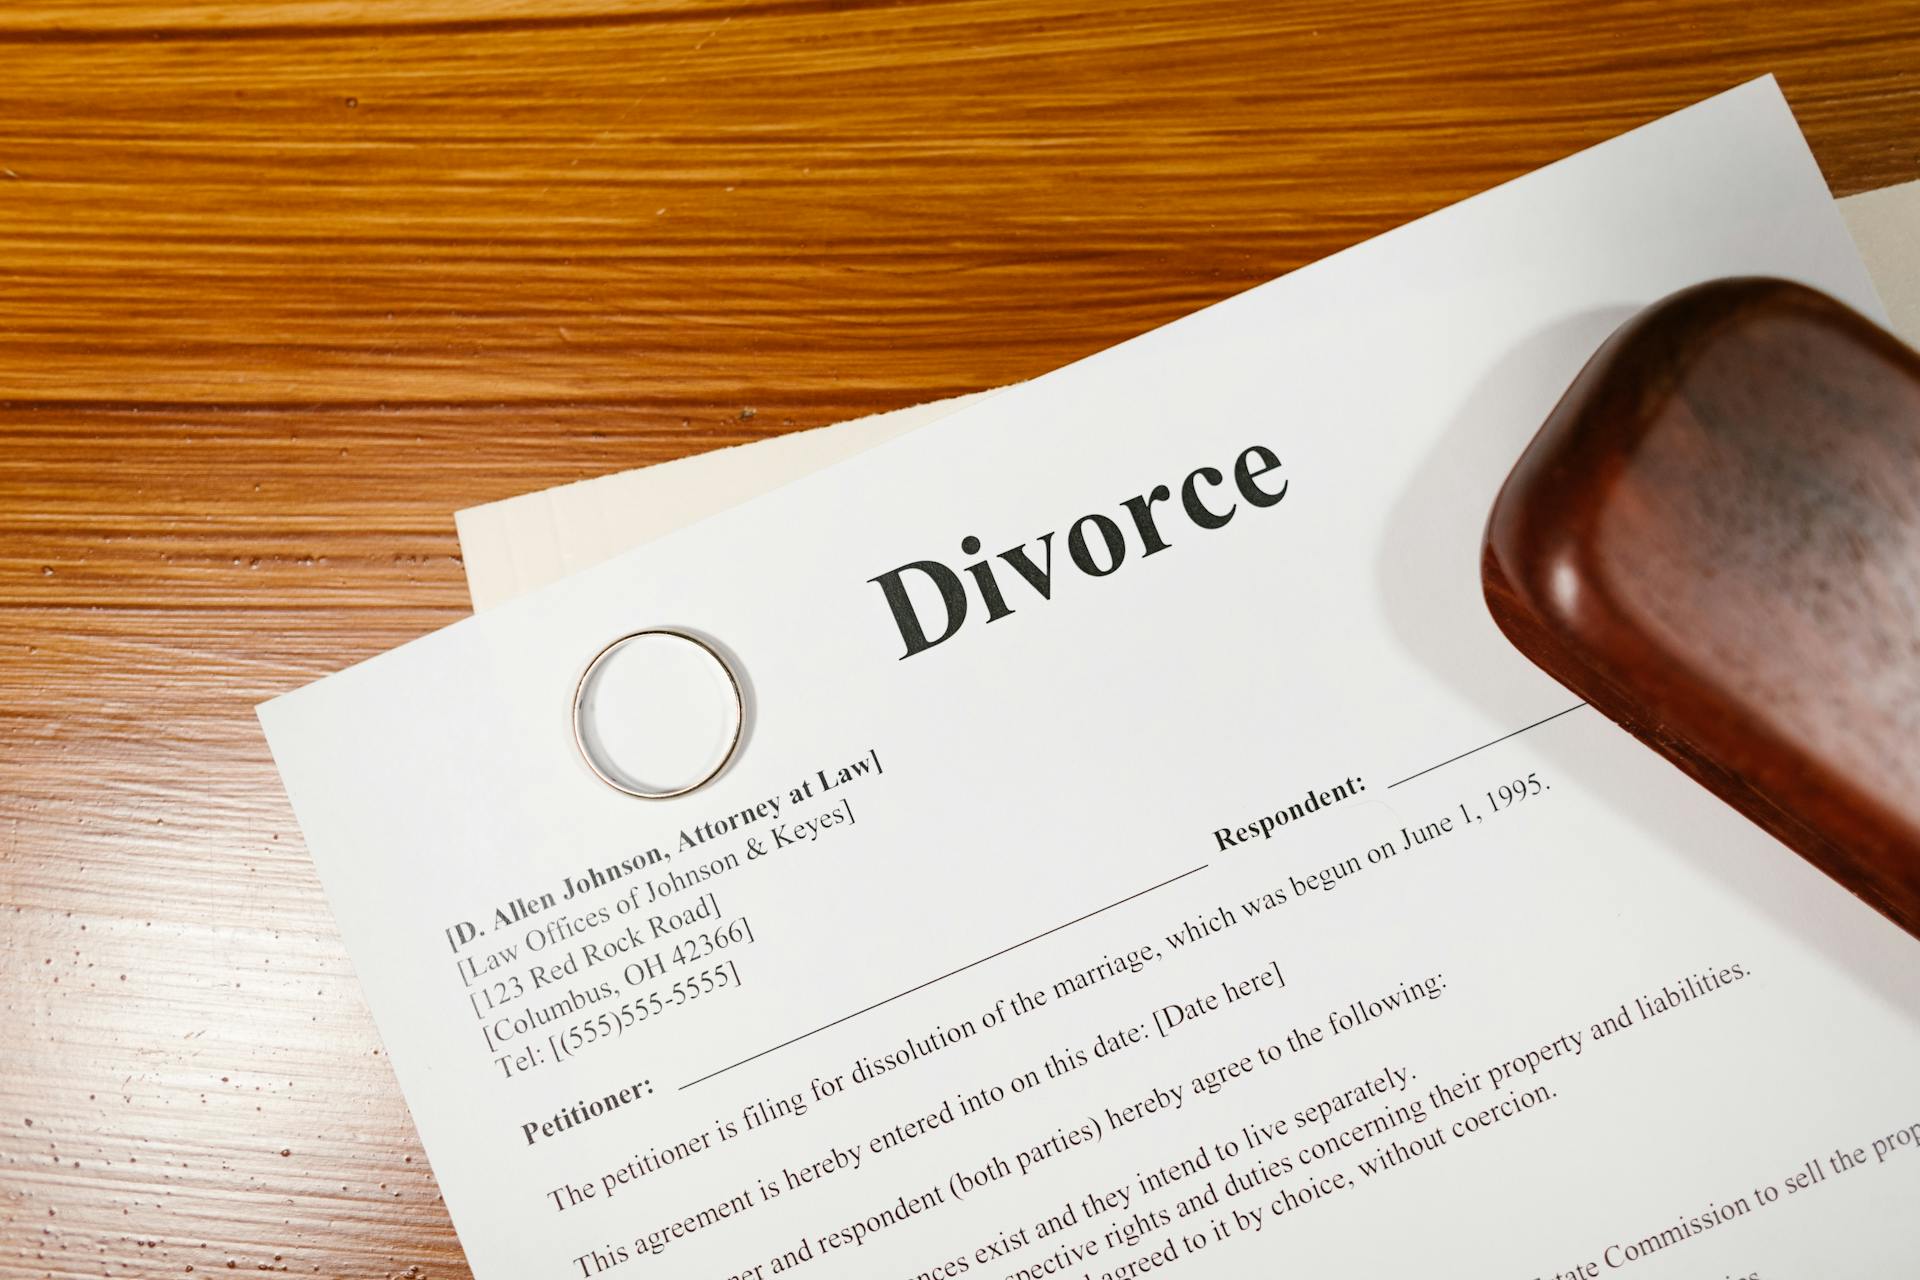 Papiers de divorce posés sur une table en bois | Source : Pexels